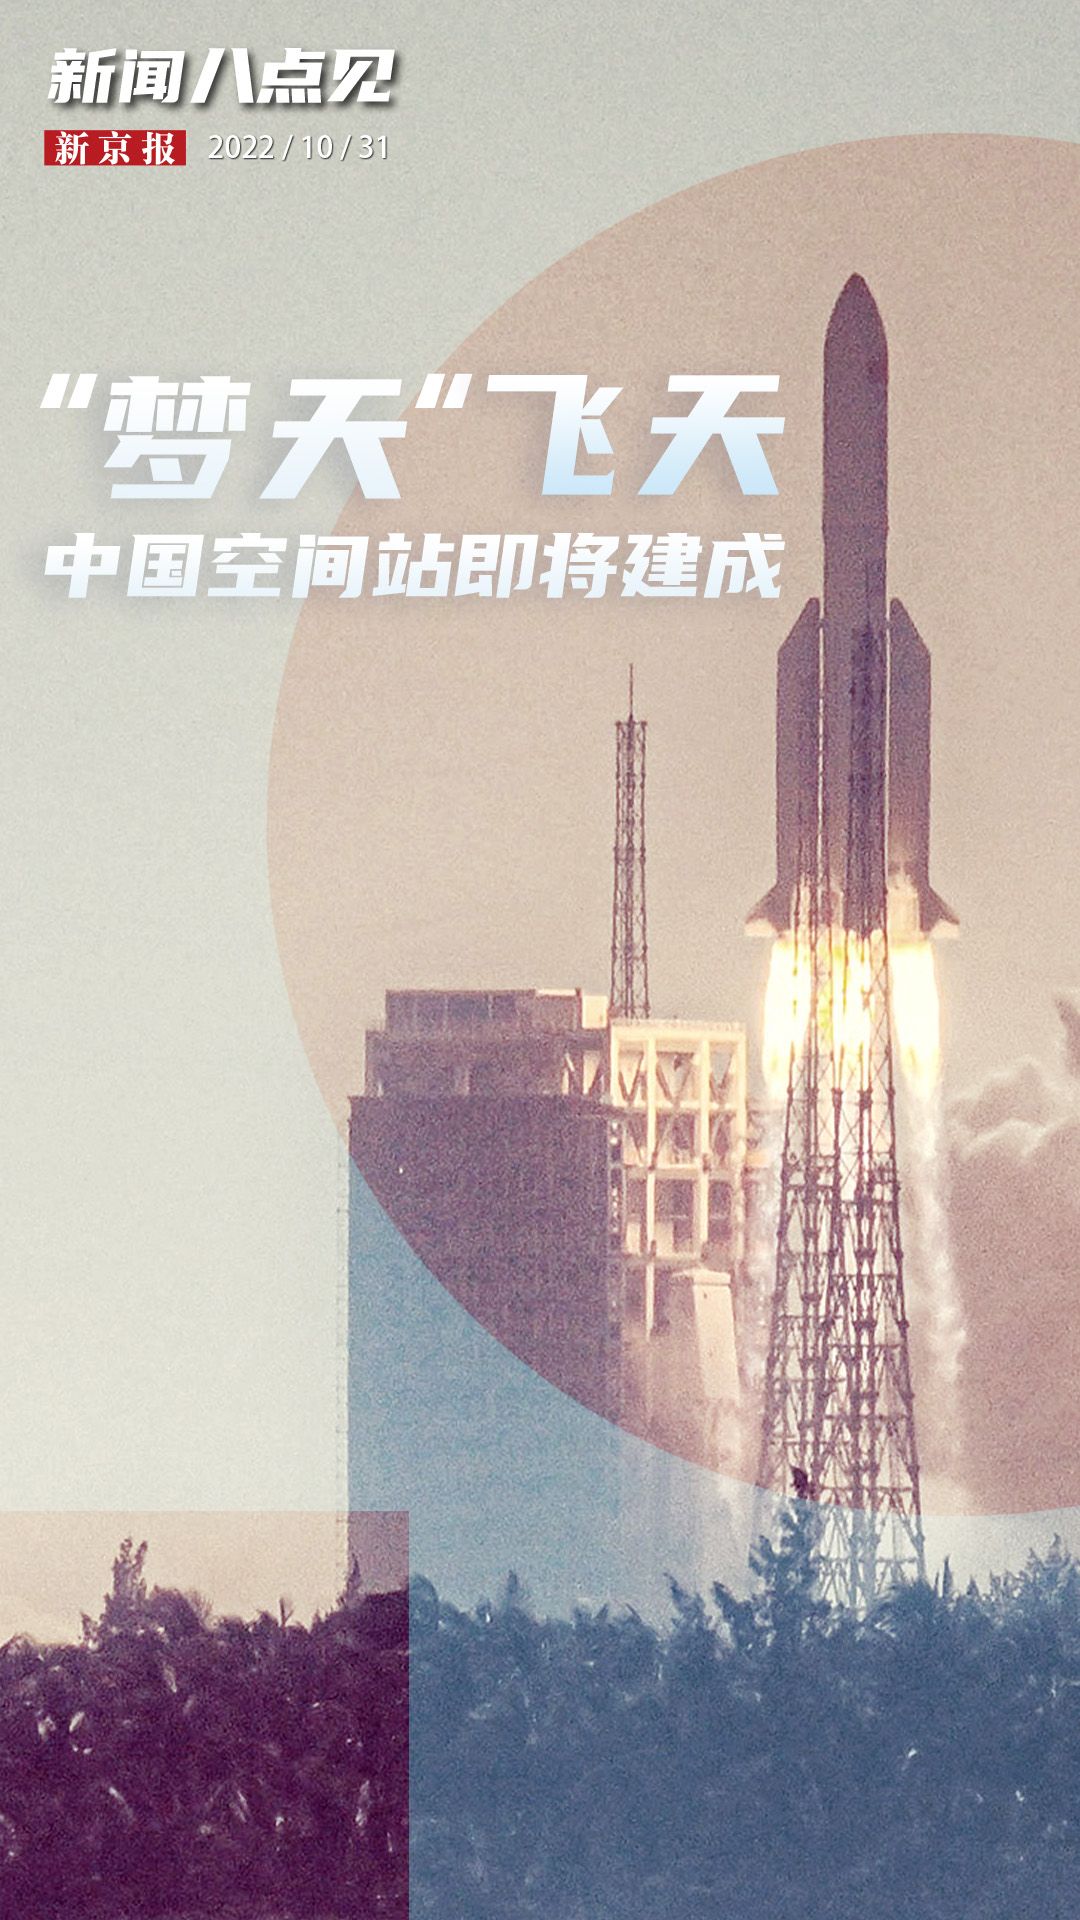 火箭新闻今天最新的消息(新闻8点见丨“梦天”飞天，中国空间站即将建成)